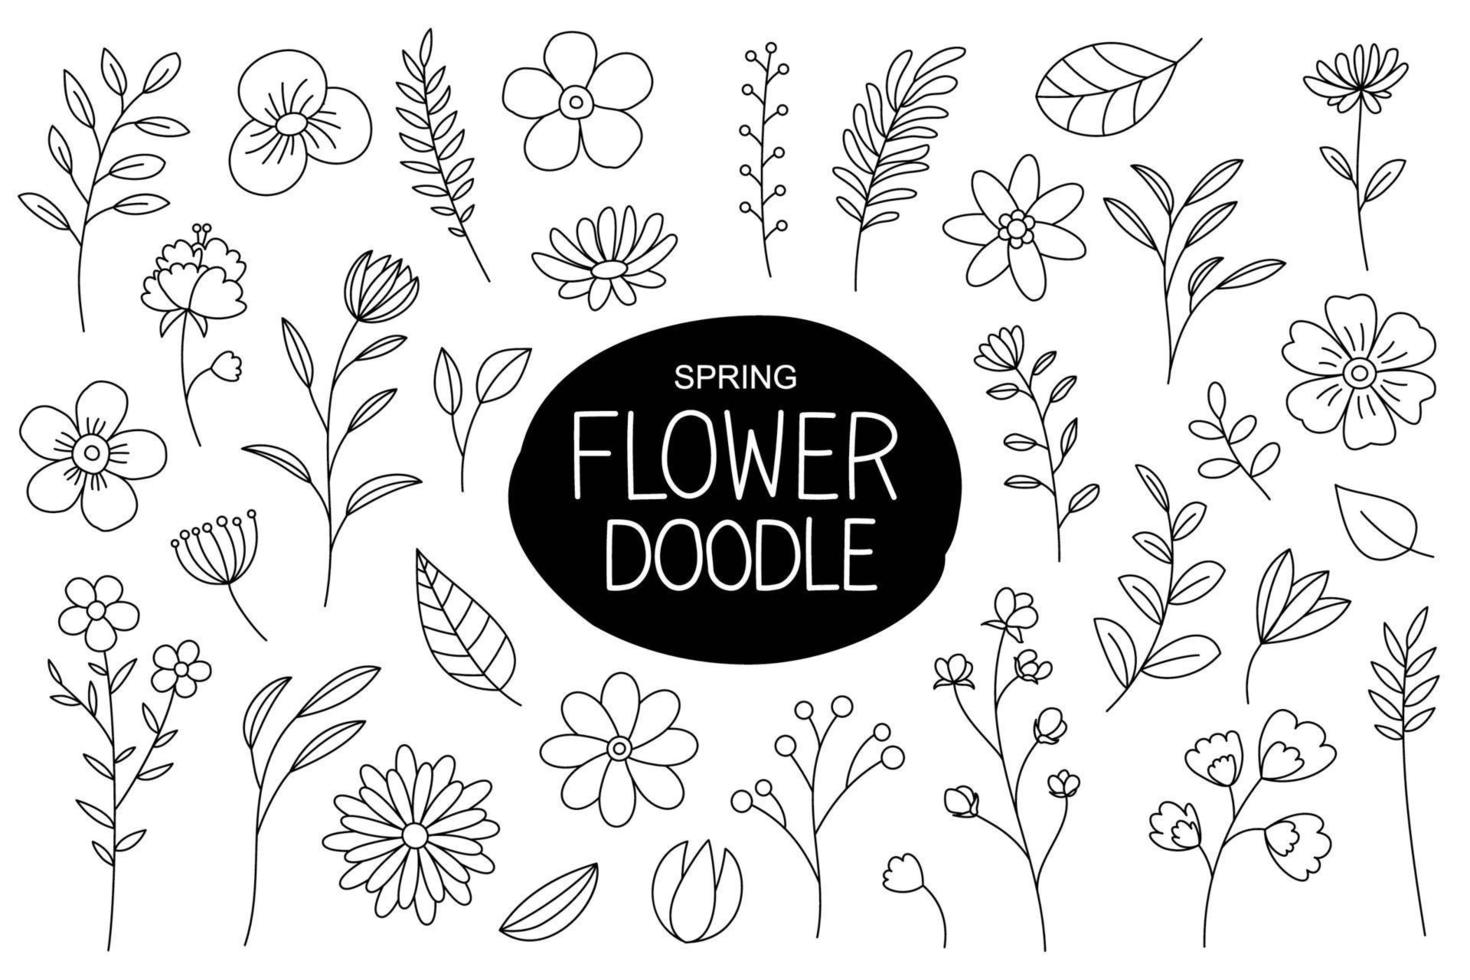 flores da primavera doodle estilo desenhado na mão. elementos florais e de folhas com coleção de flores da primavera. vetor